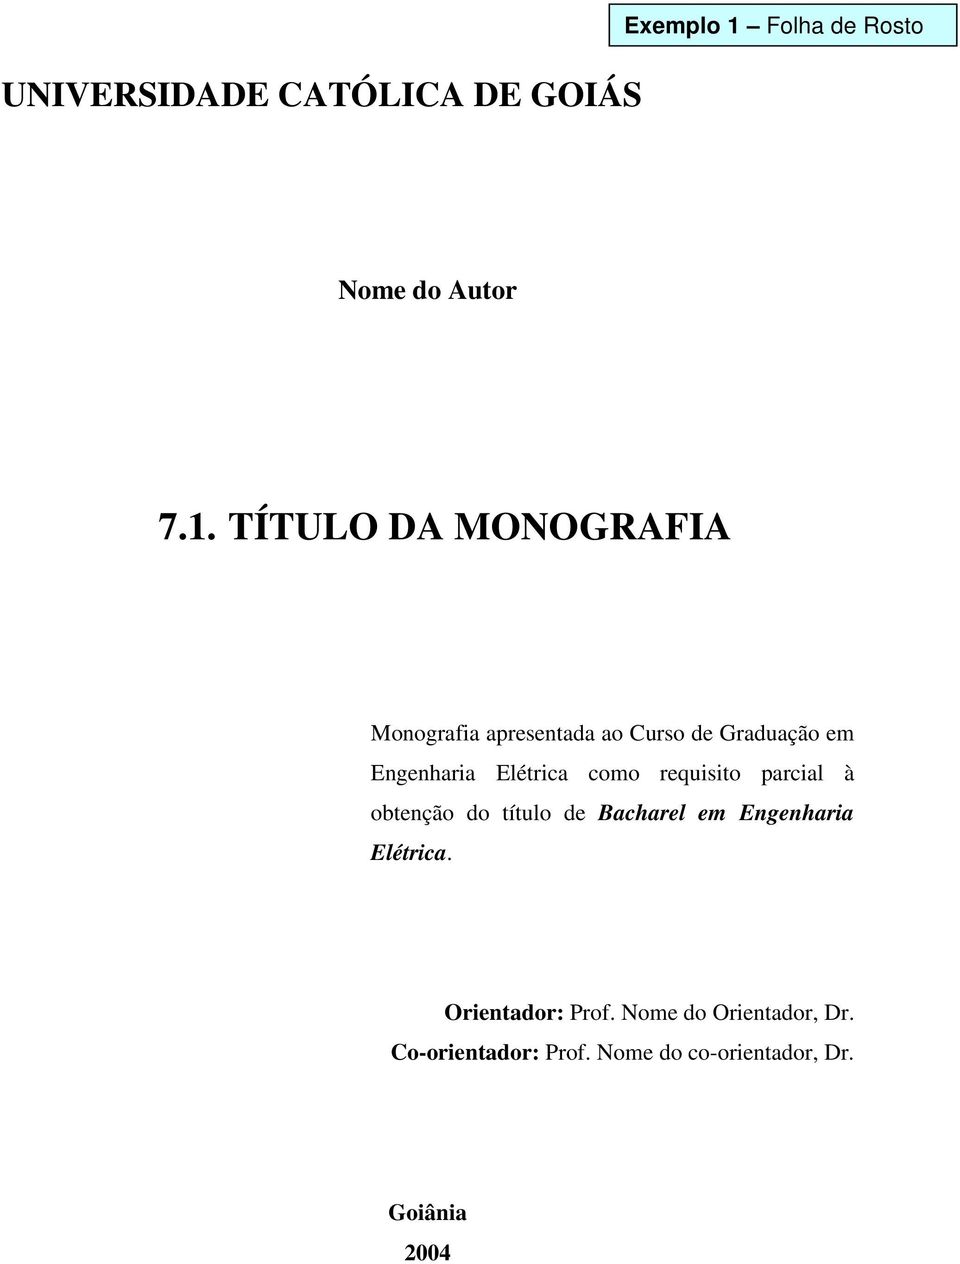 TÍTULO DA MONOGRAFIA Monografia apresentada ao Curso de Graduação em Engenharia